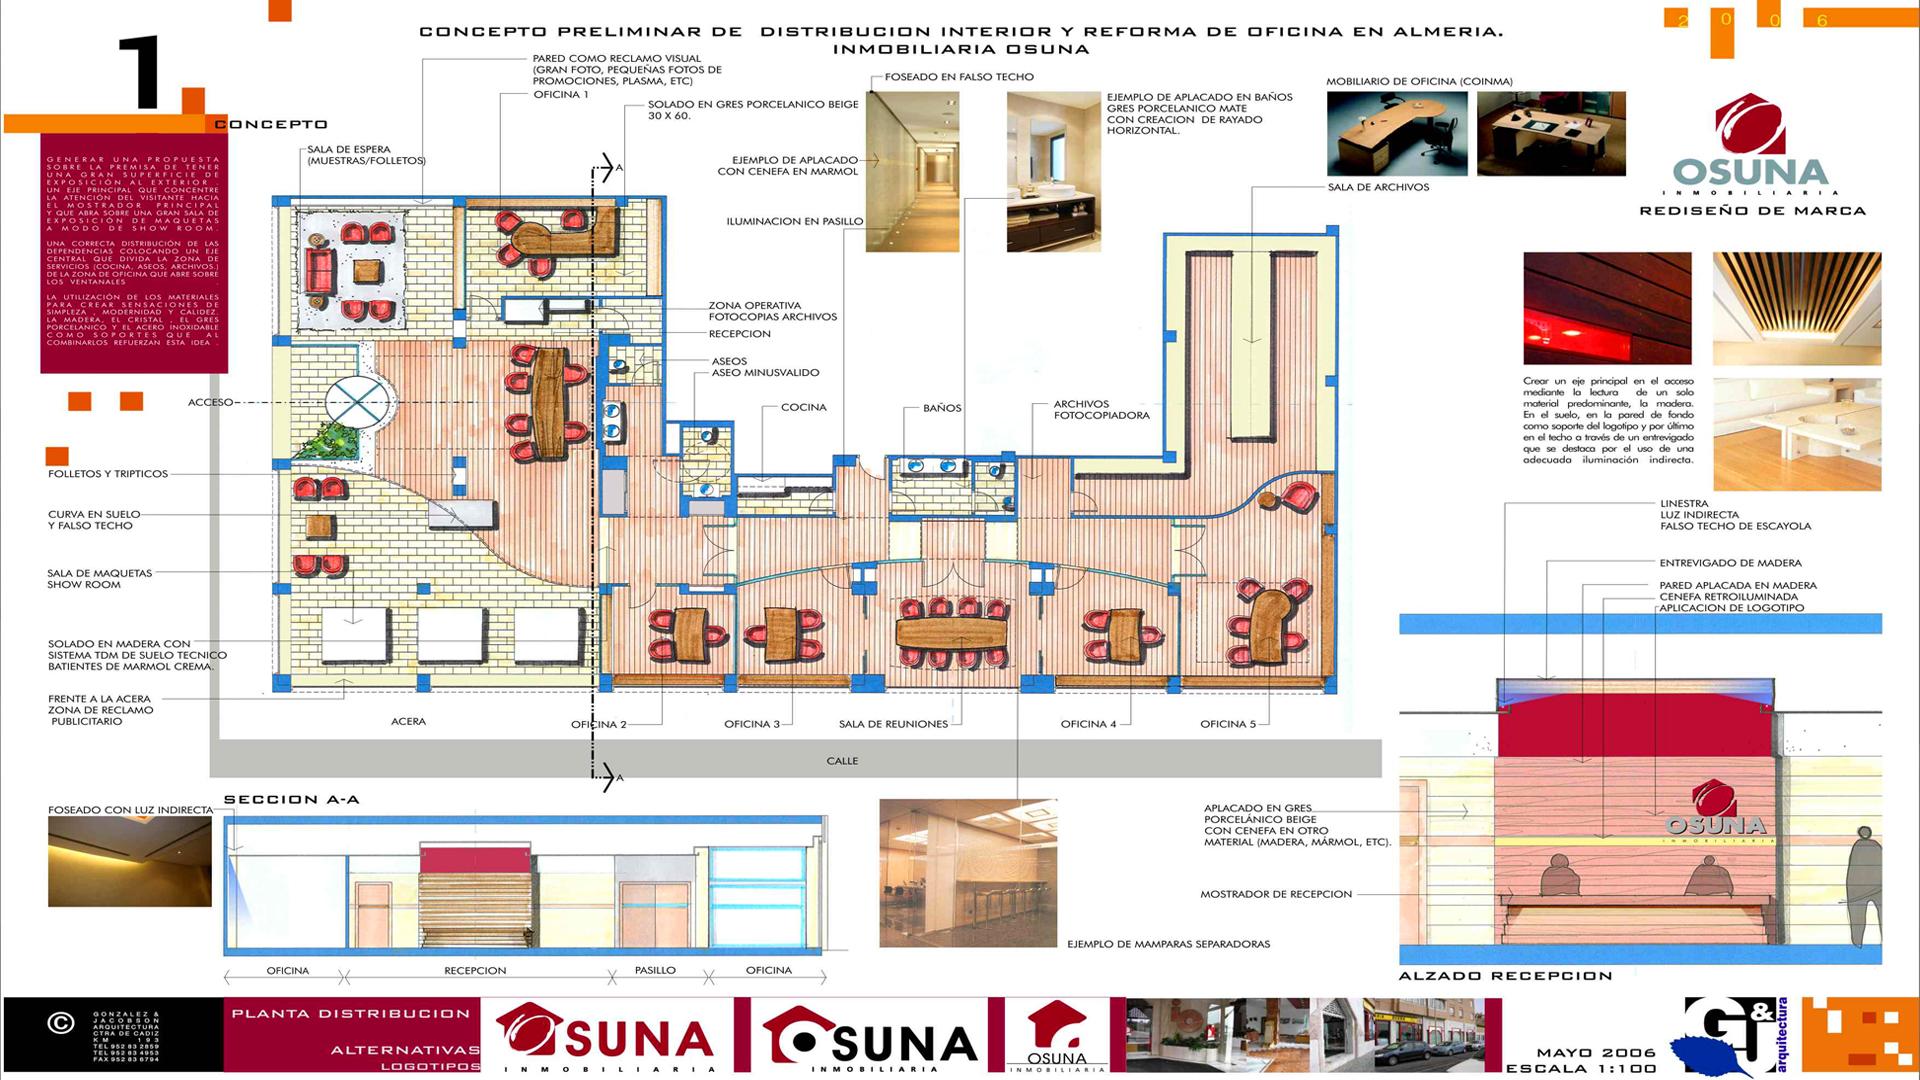 Interiorismo - Diseño Interior oficinas Inmobiliaria Osuna en Almería 